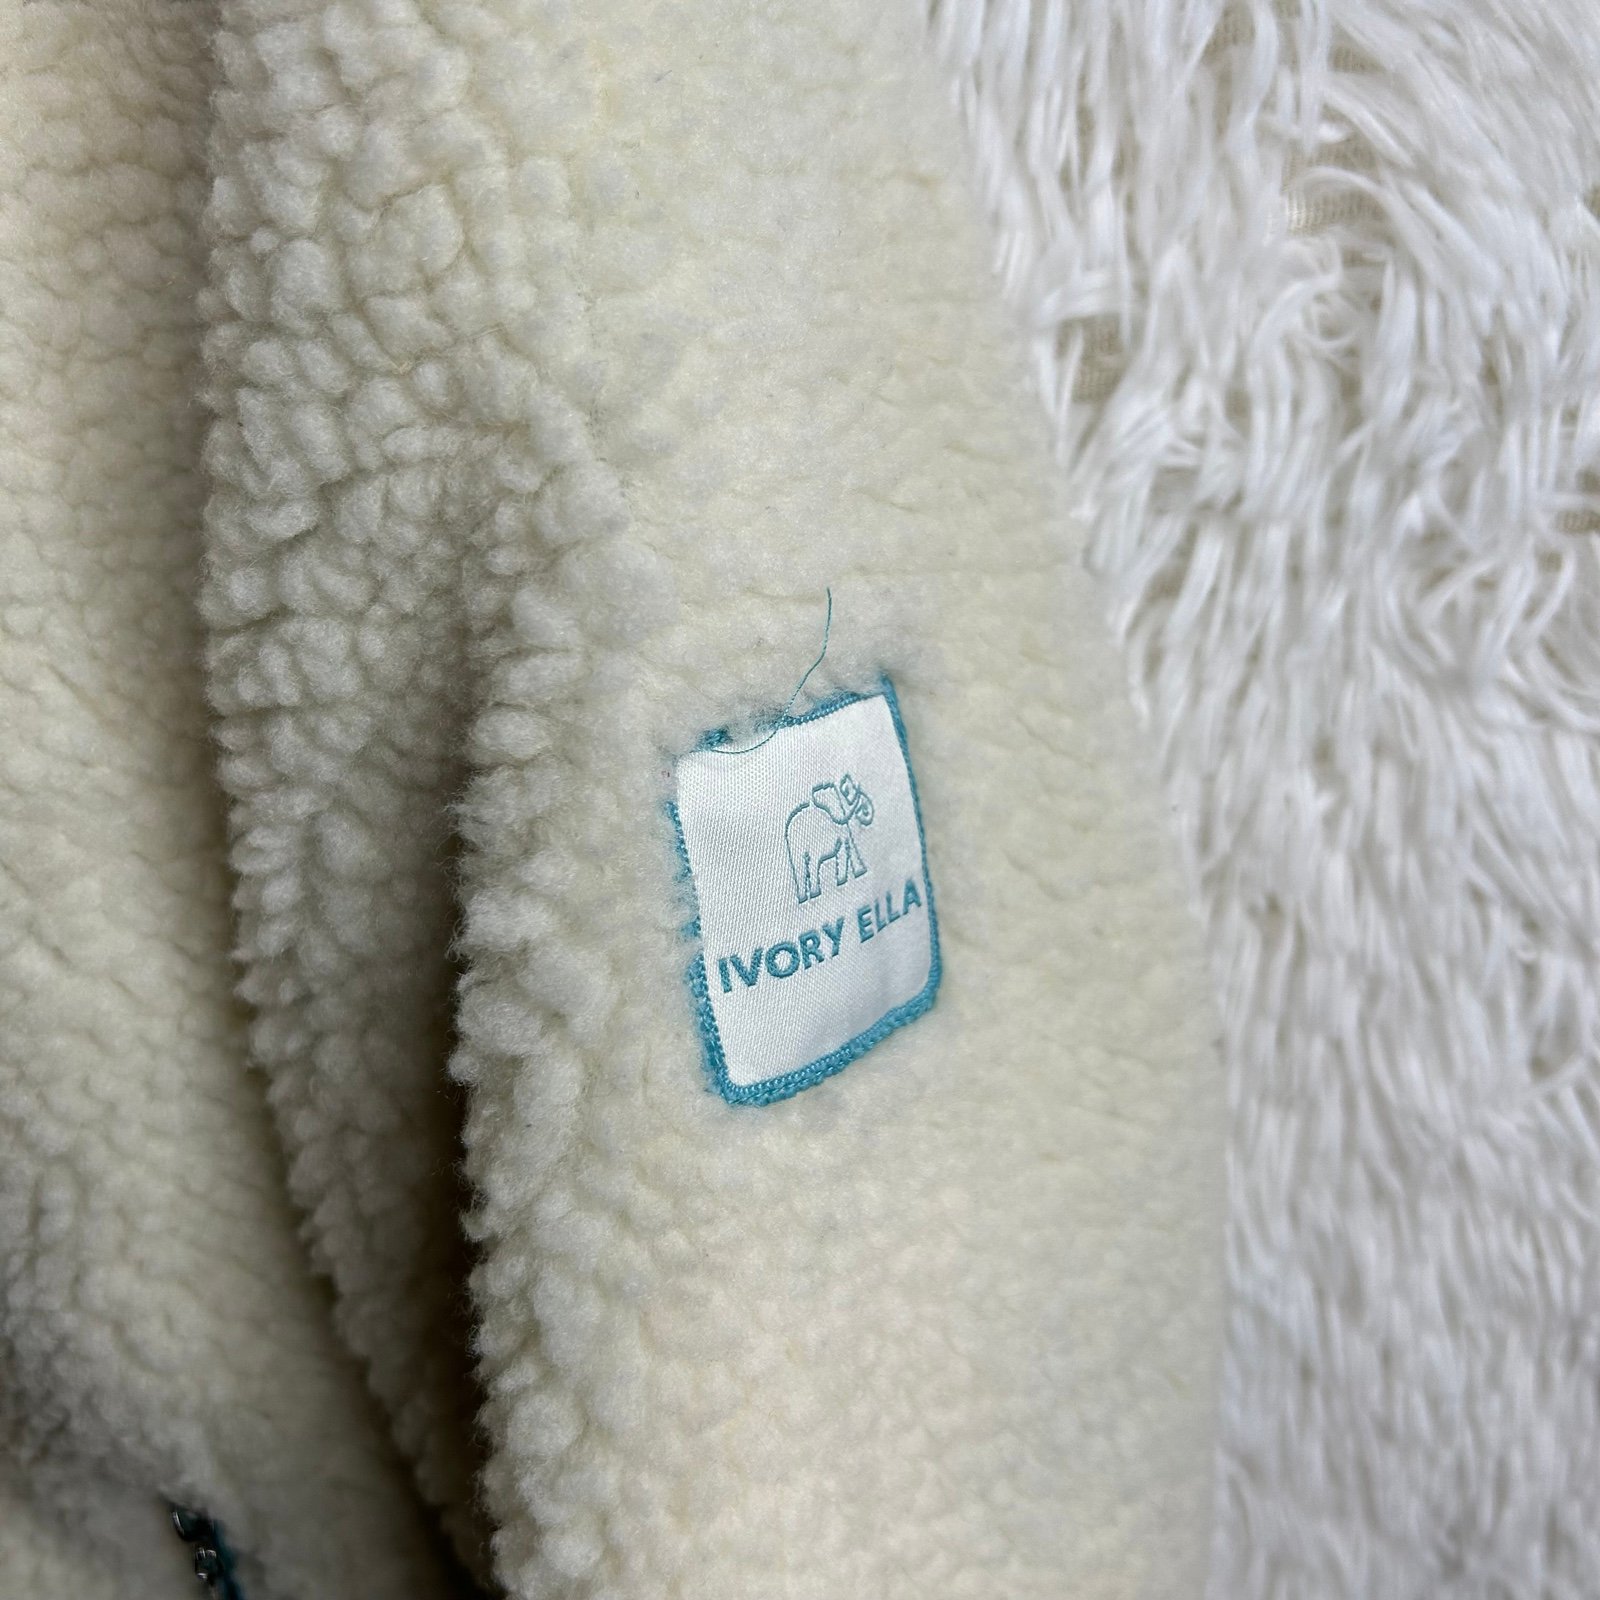 Special offer  Ivory Ella Chloe High-Pile Sherpa Fleece Full Zip Jacket Sz M Hs5wbKdFd Great